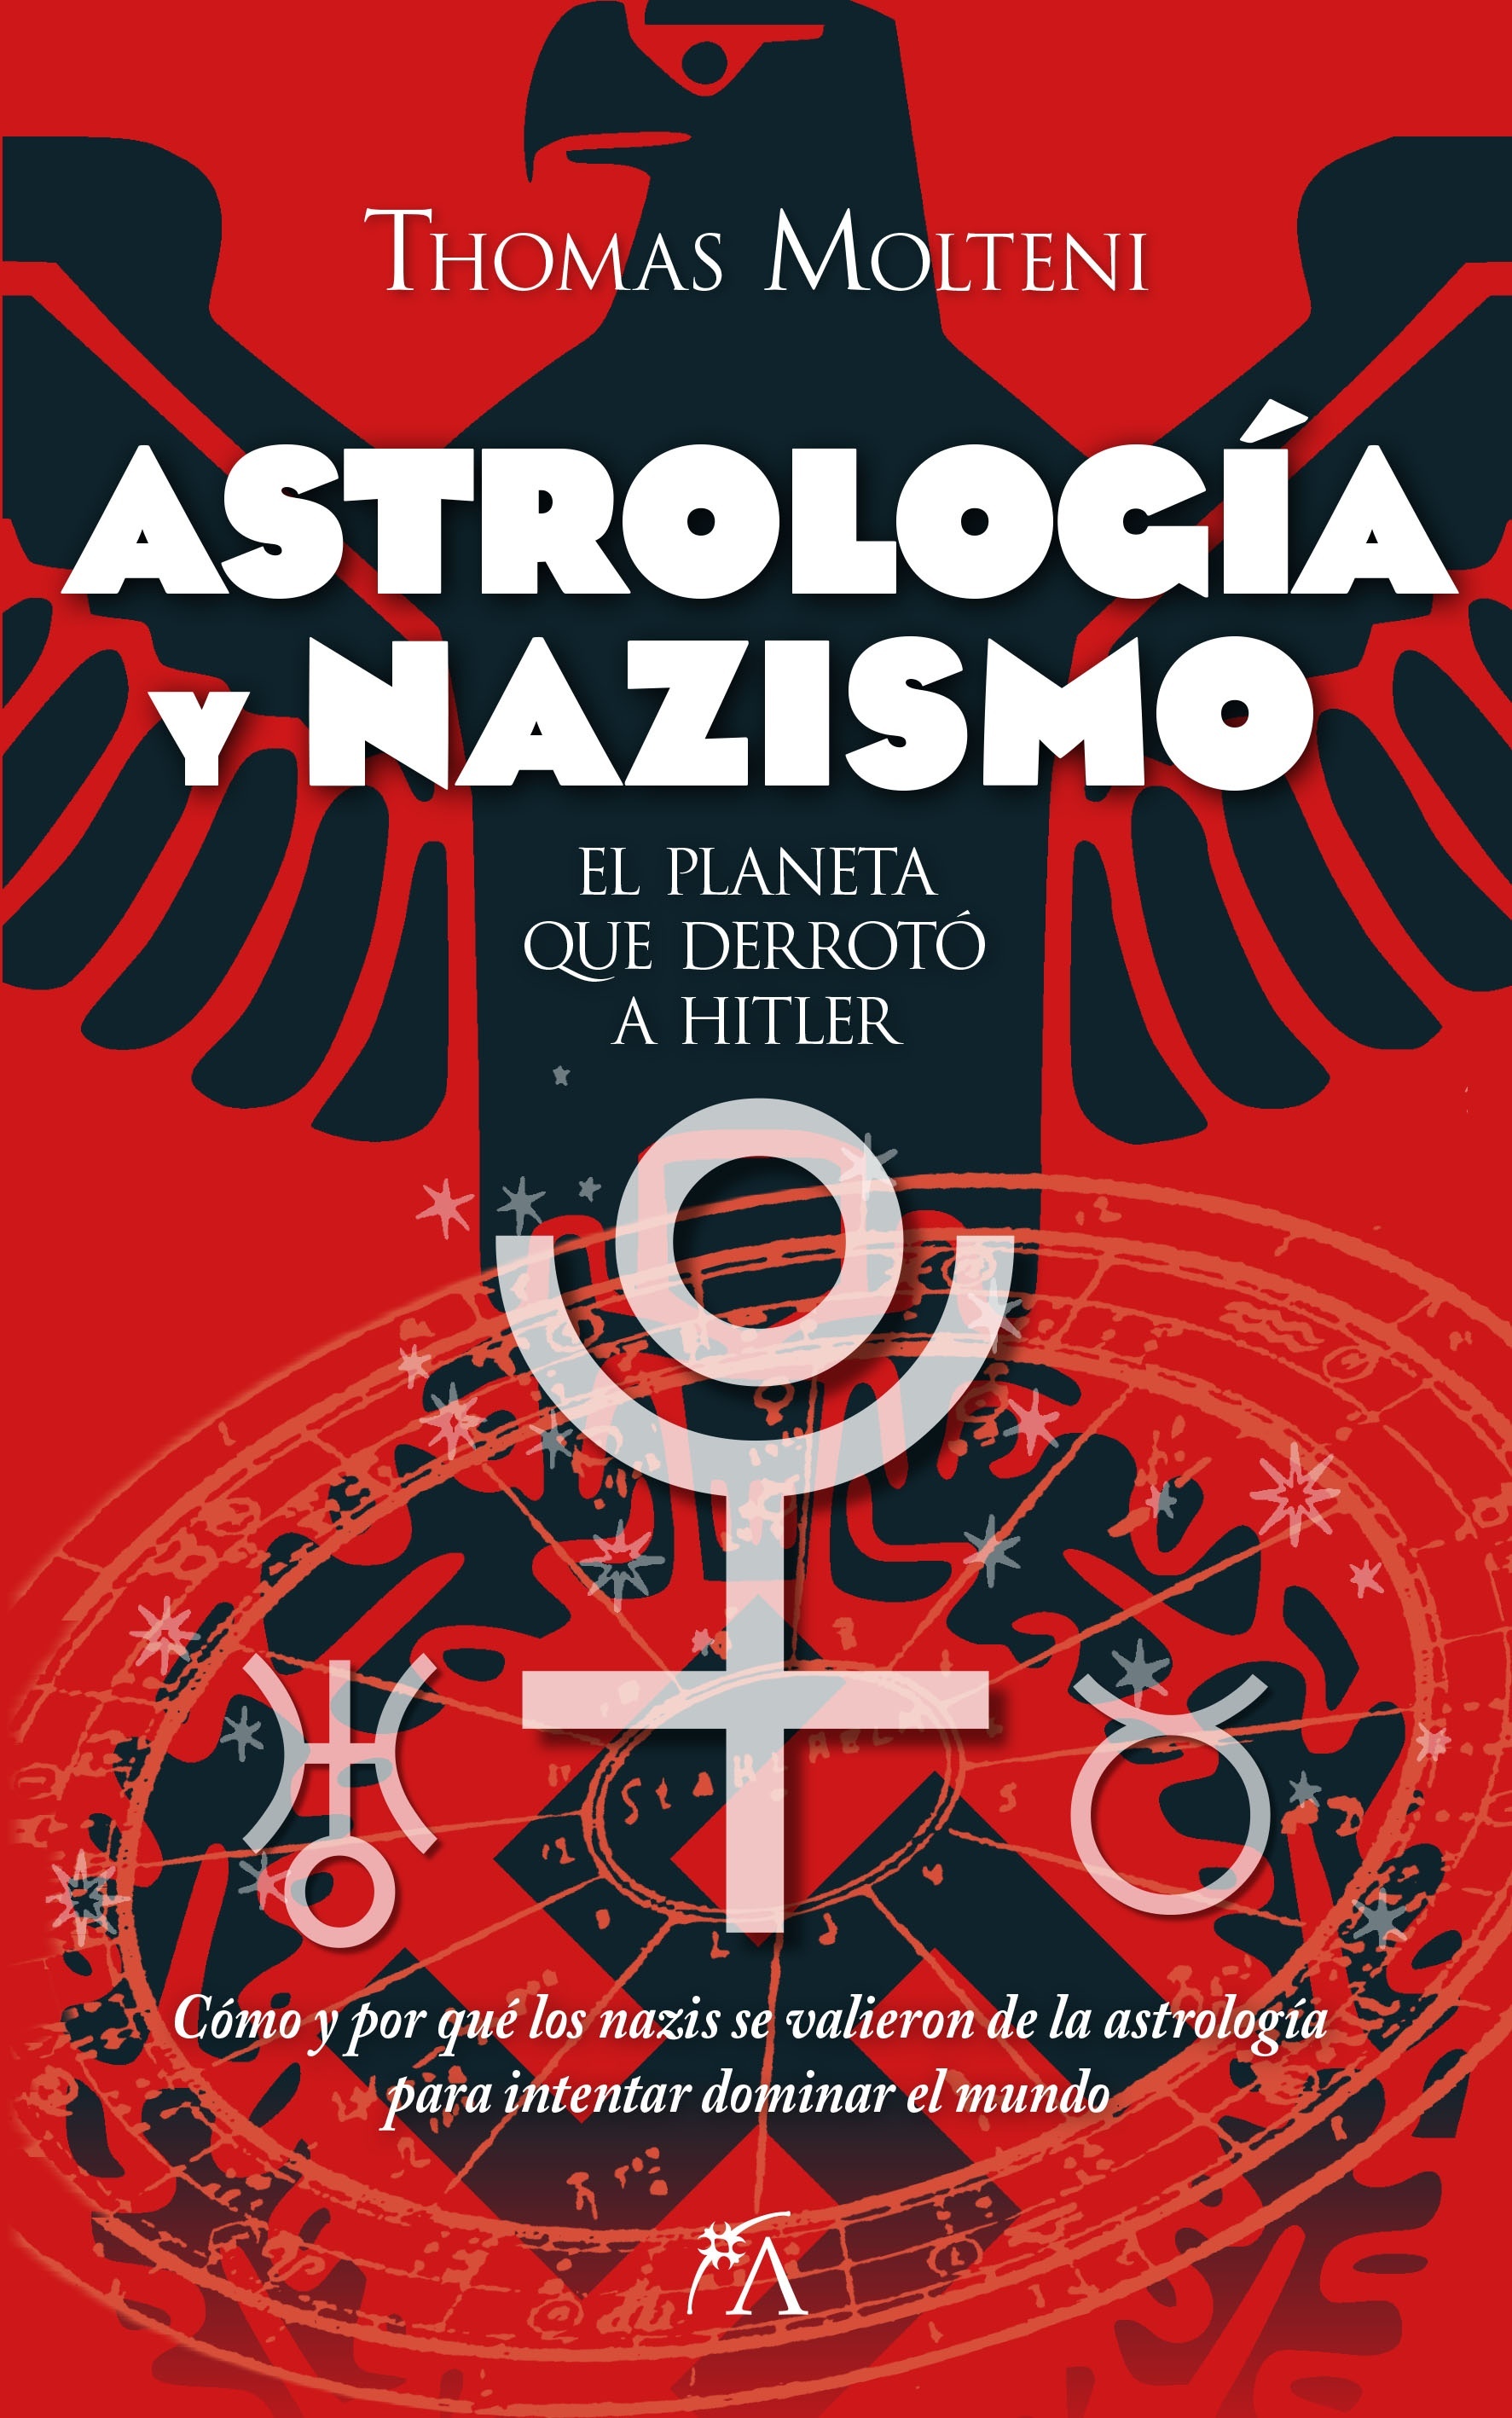 Astrología y nazismo "El planeta que derrotó a Hitler". 